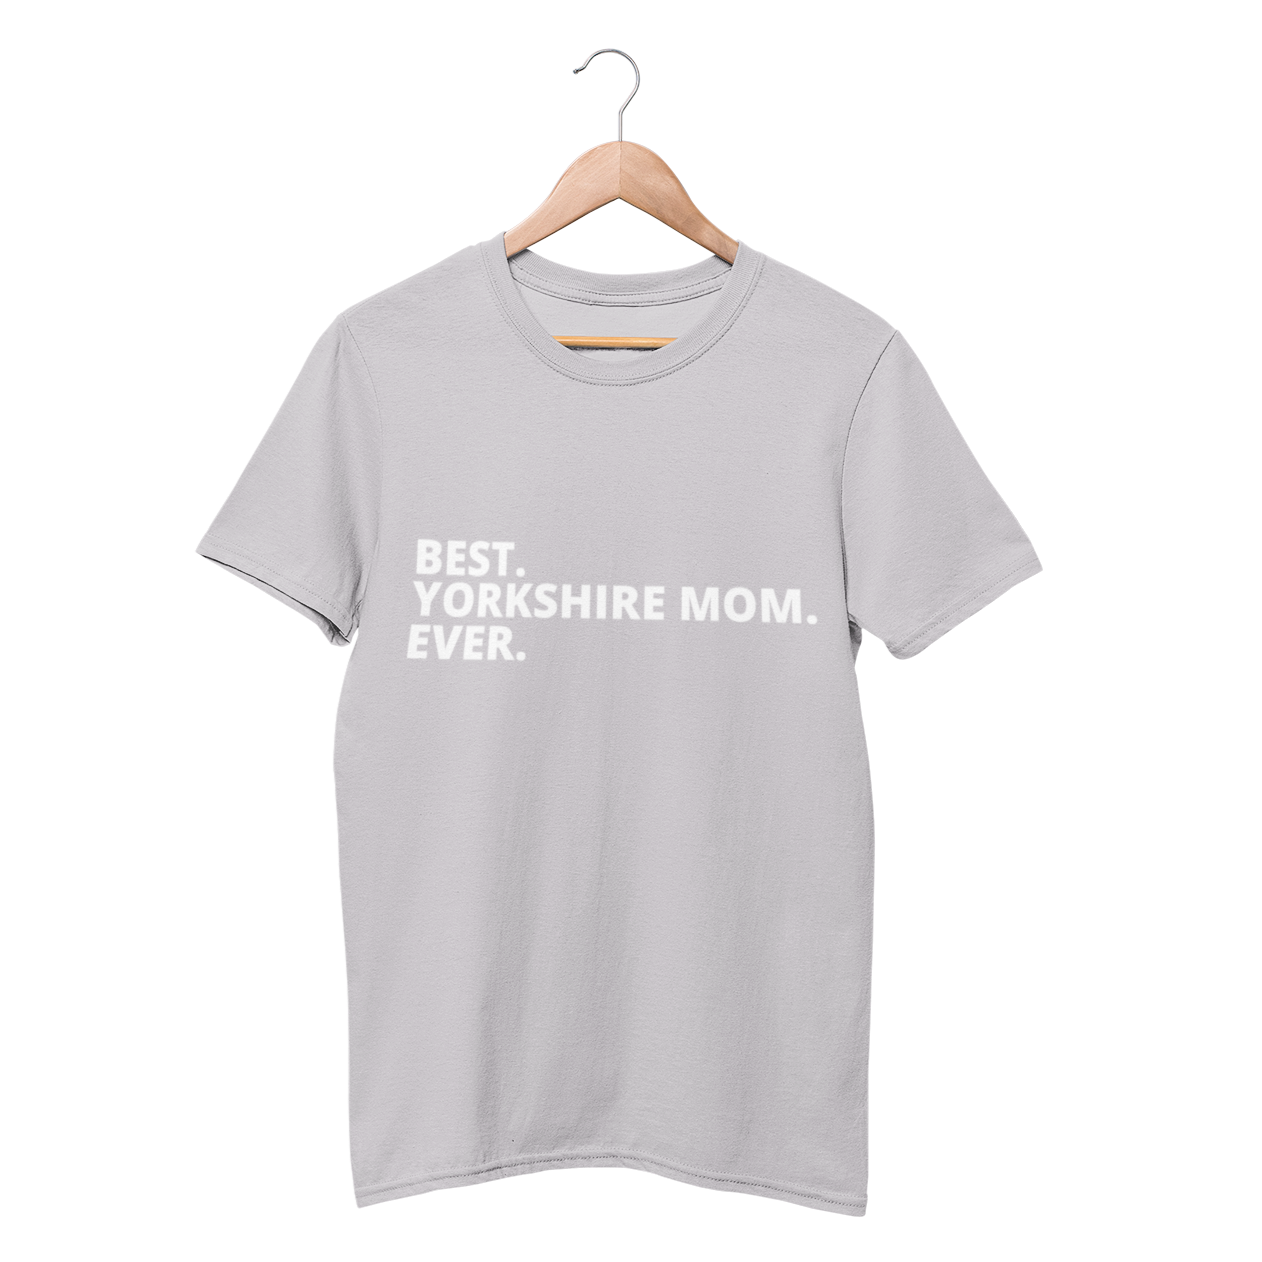 Best Yorshire Mom Ever Shirt - Funny Labrador Cute Shirt Labradors Labs